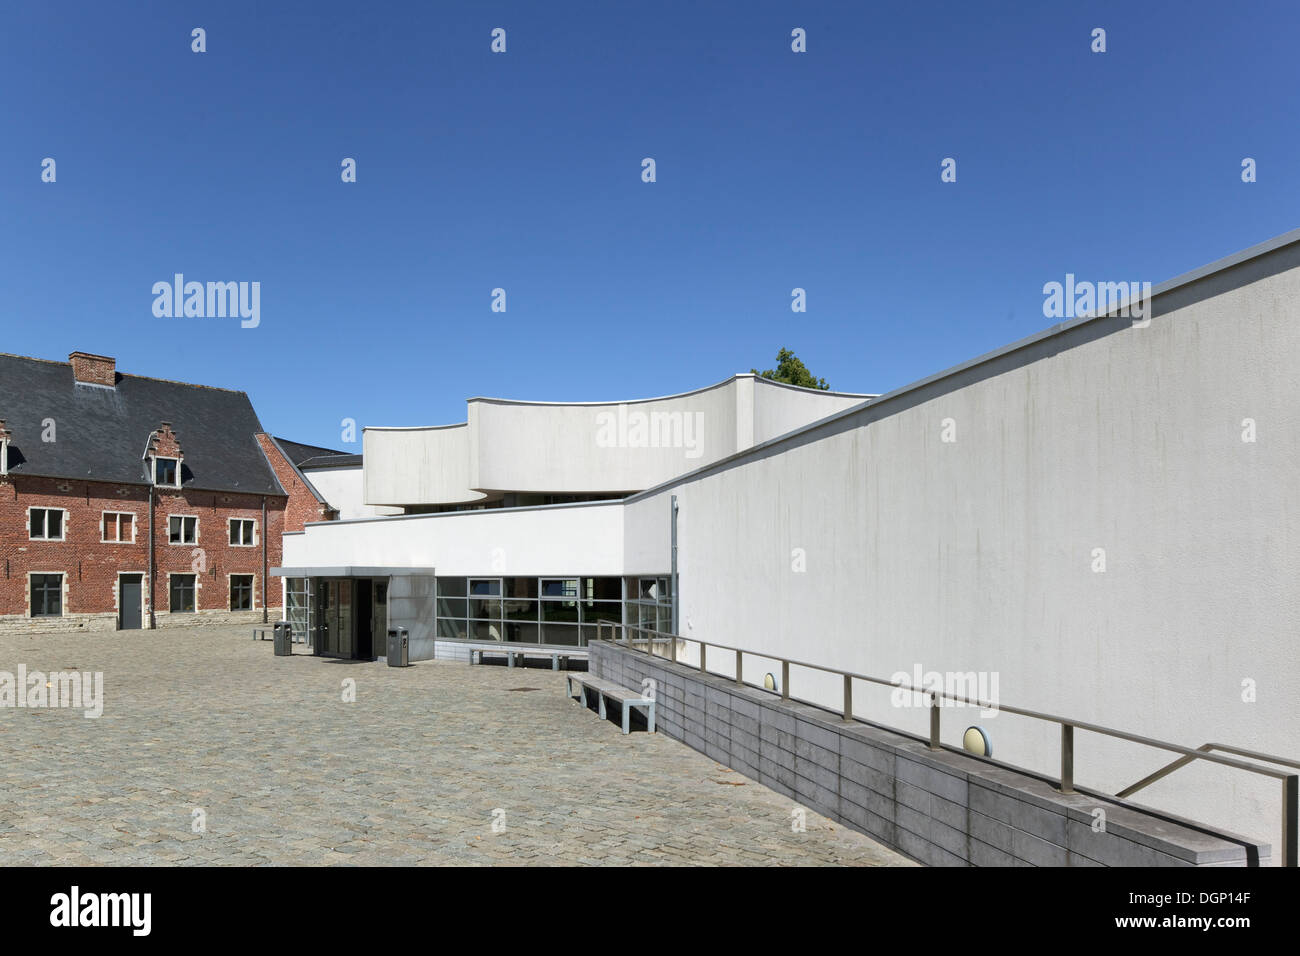 Università Cattolica di Lovanio Arenberg biblioteca, Leuven, Belgio. Architetto: Rafael Moneo, 2002. Ingresso principale alla libreria, con w Foto Stock